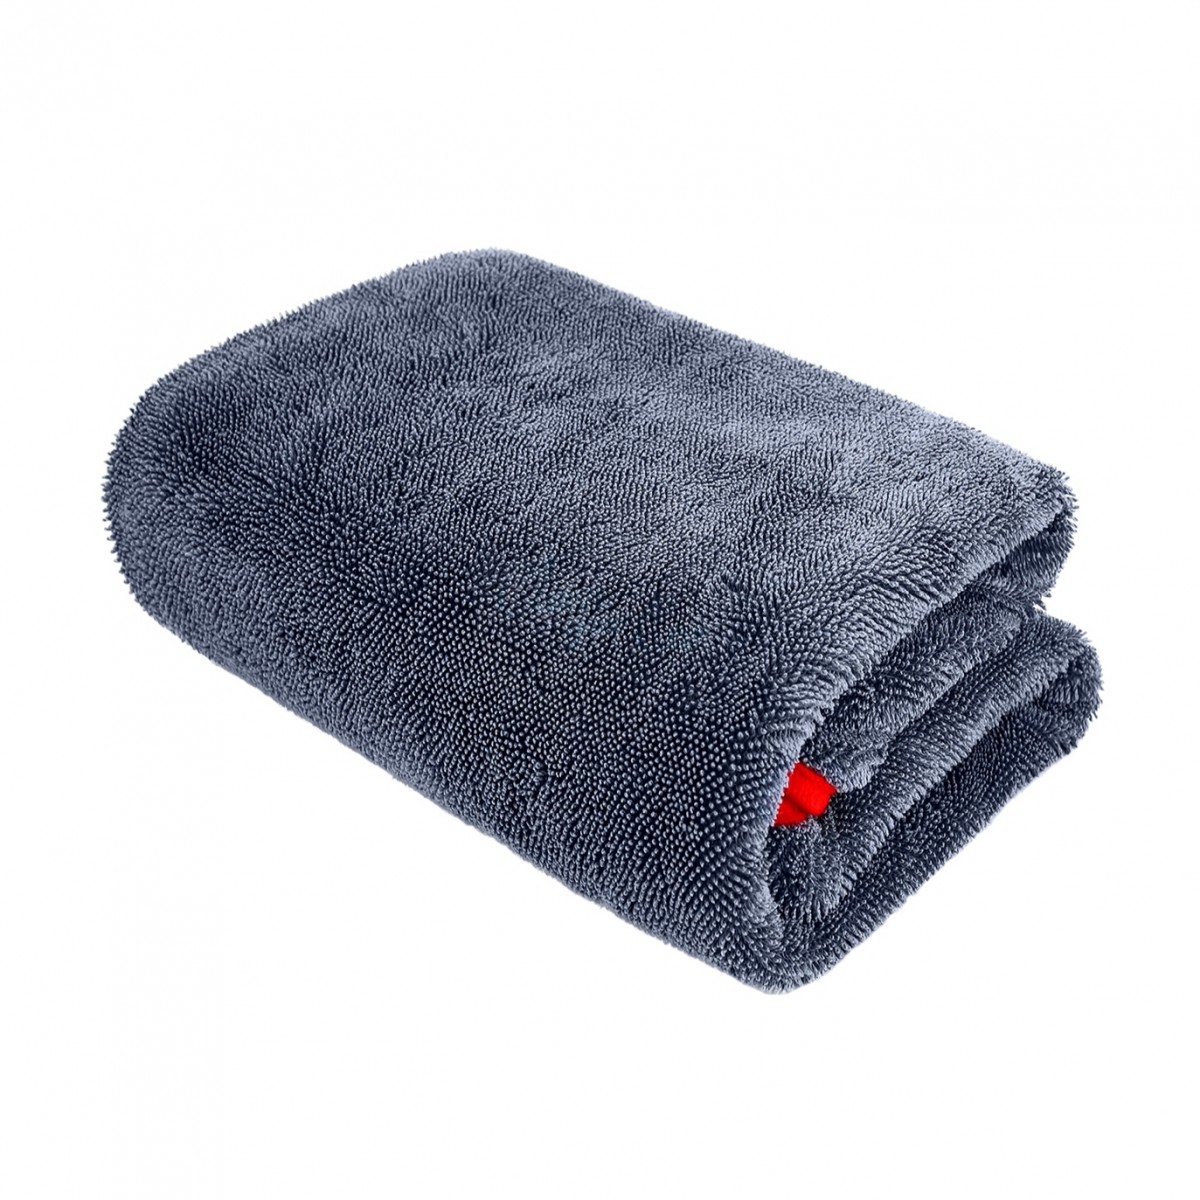 Высуши полотенце. PURESTAR Twist Drying Towel, 50х60см. Twist Drying Towel - полотенце из микрофибры, серое, 50х60 см, PURESTAR. Микрофибровое полотенце Dry Monster. Полотенце 50x90, 8699398003964.